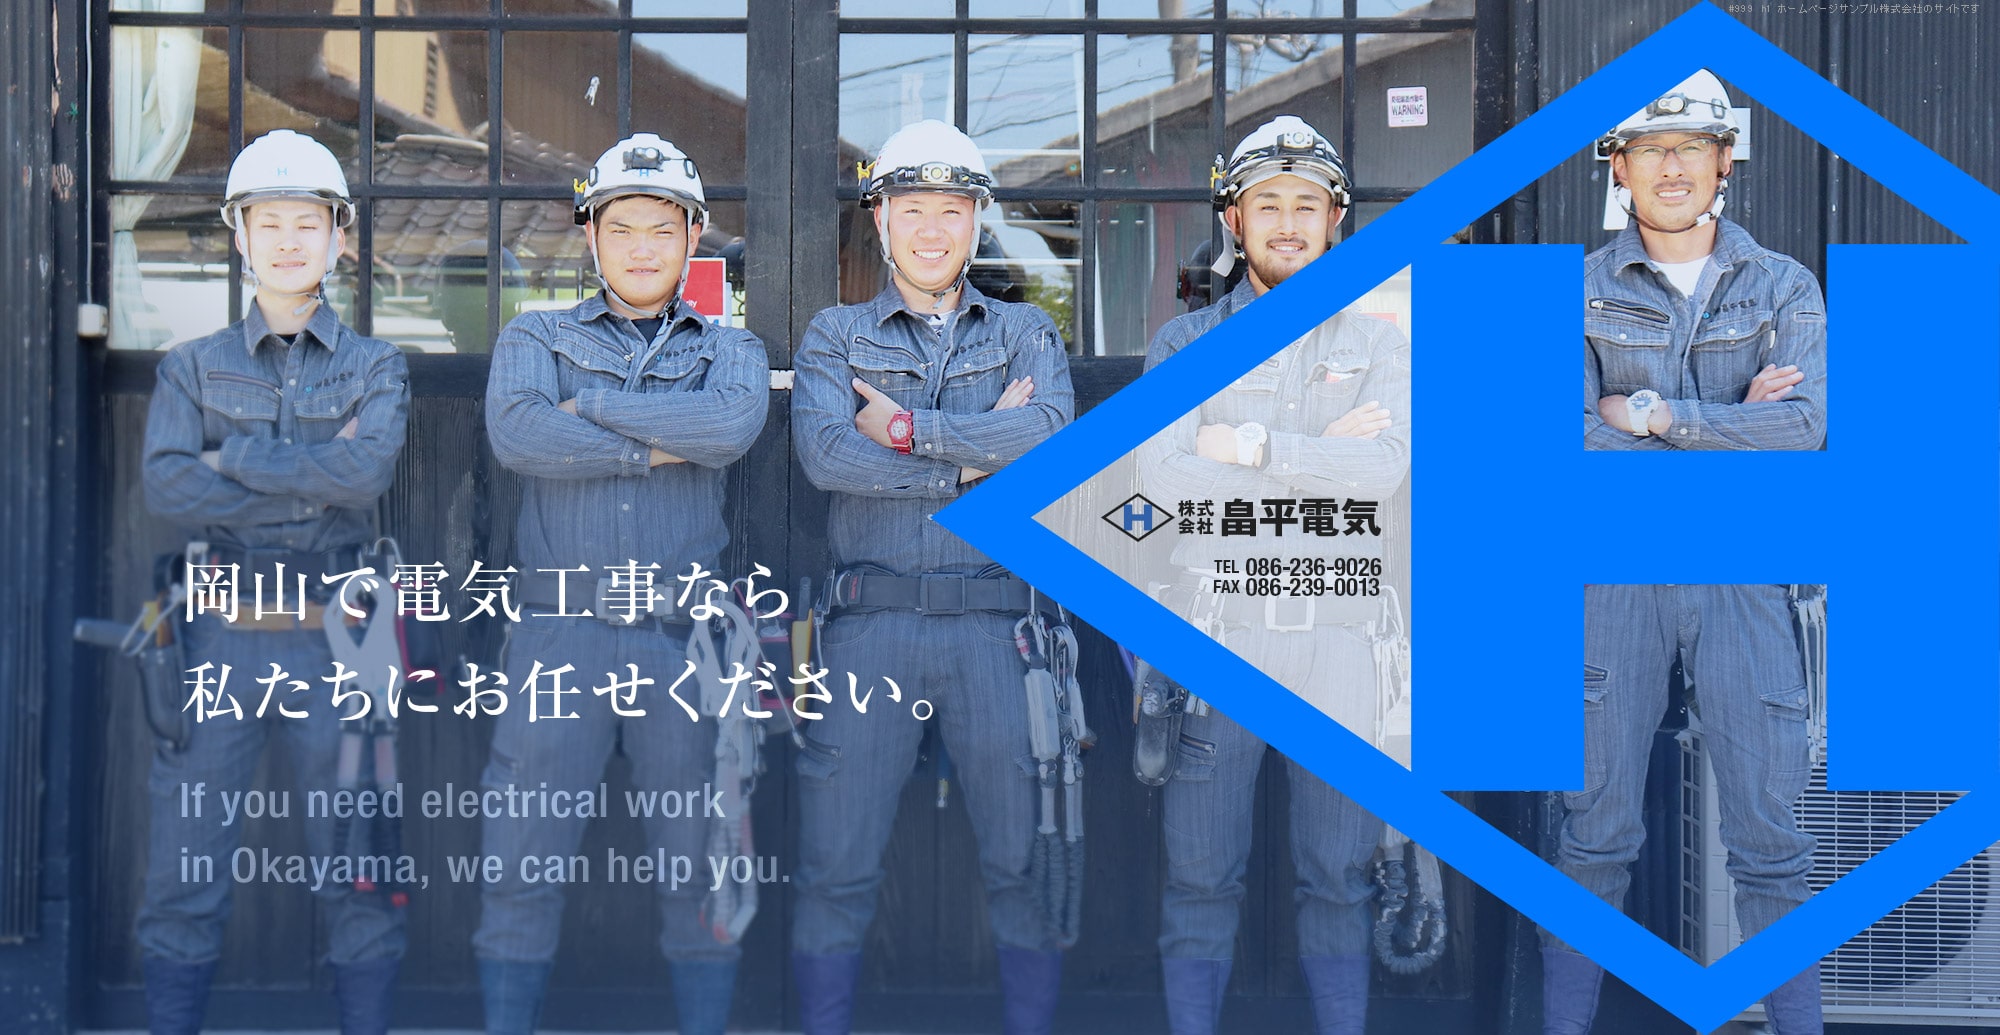 岡山で電気工事なら私達にお任せください。